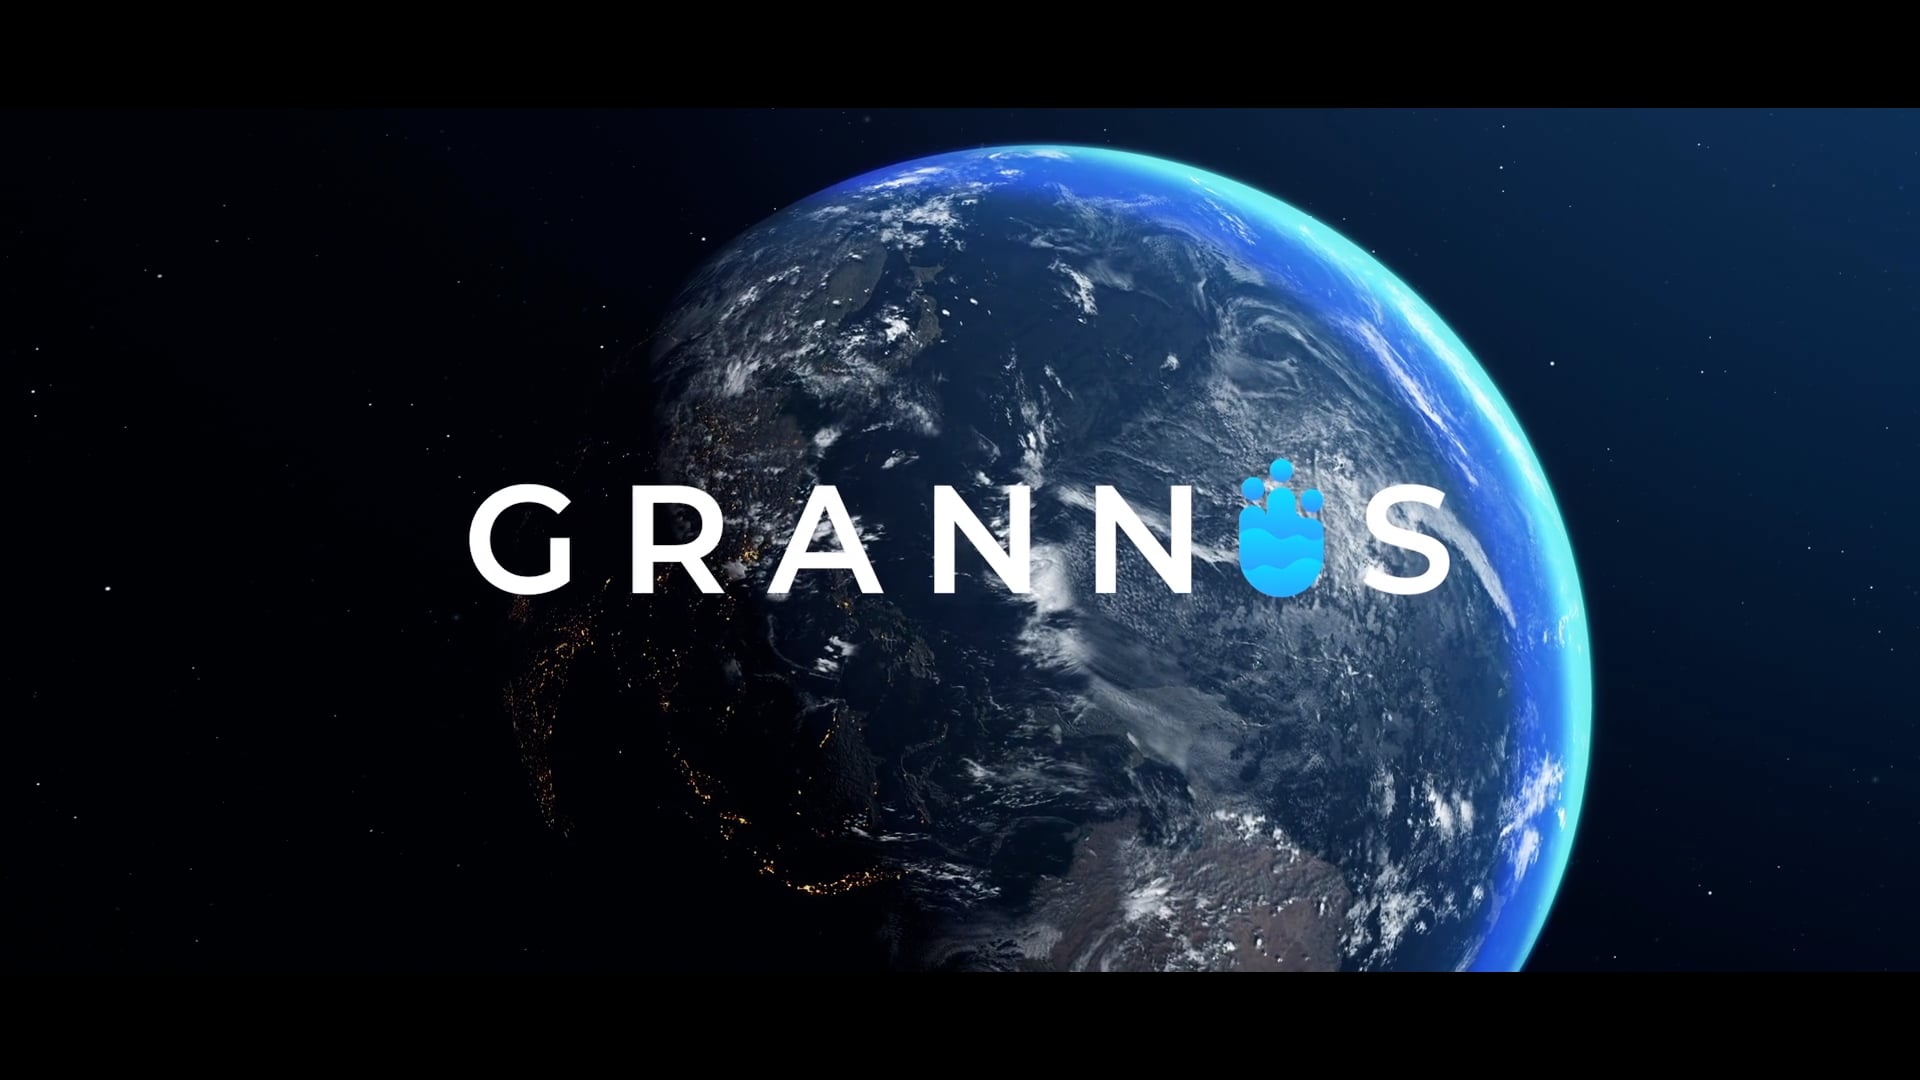 Grannus Product Launch Video